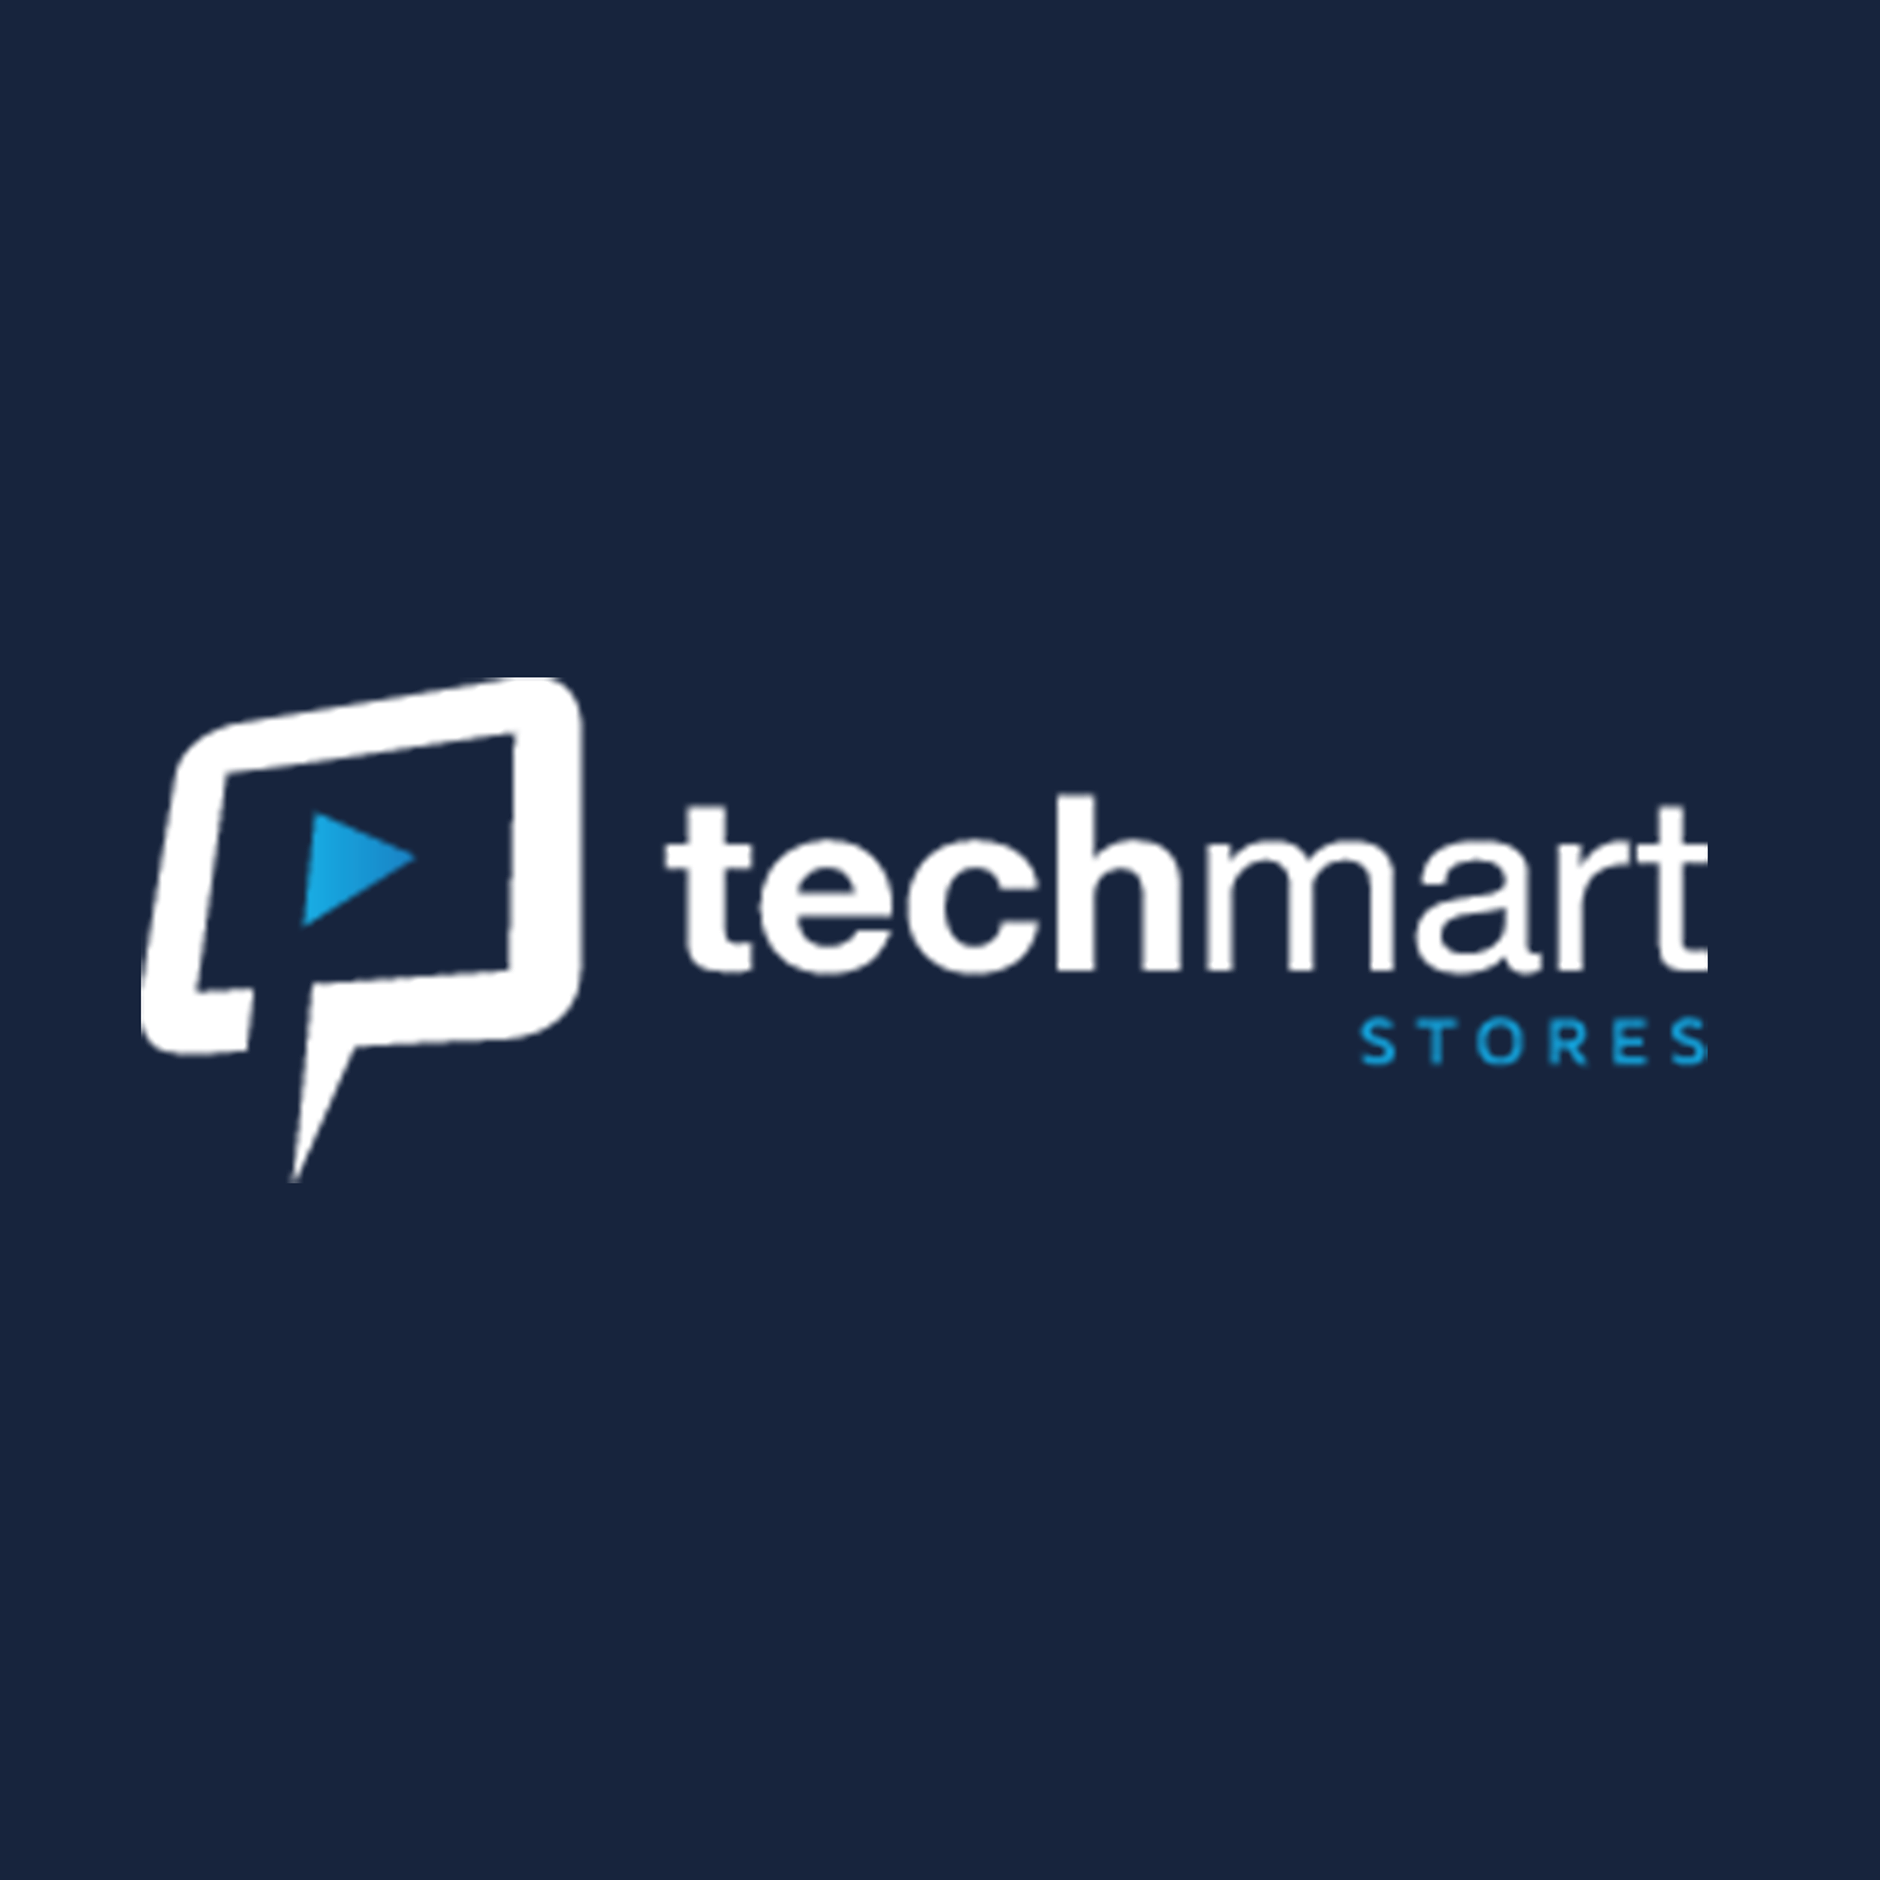 Techmart